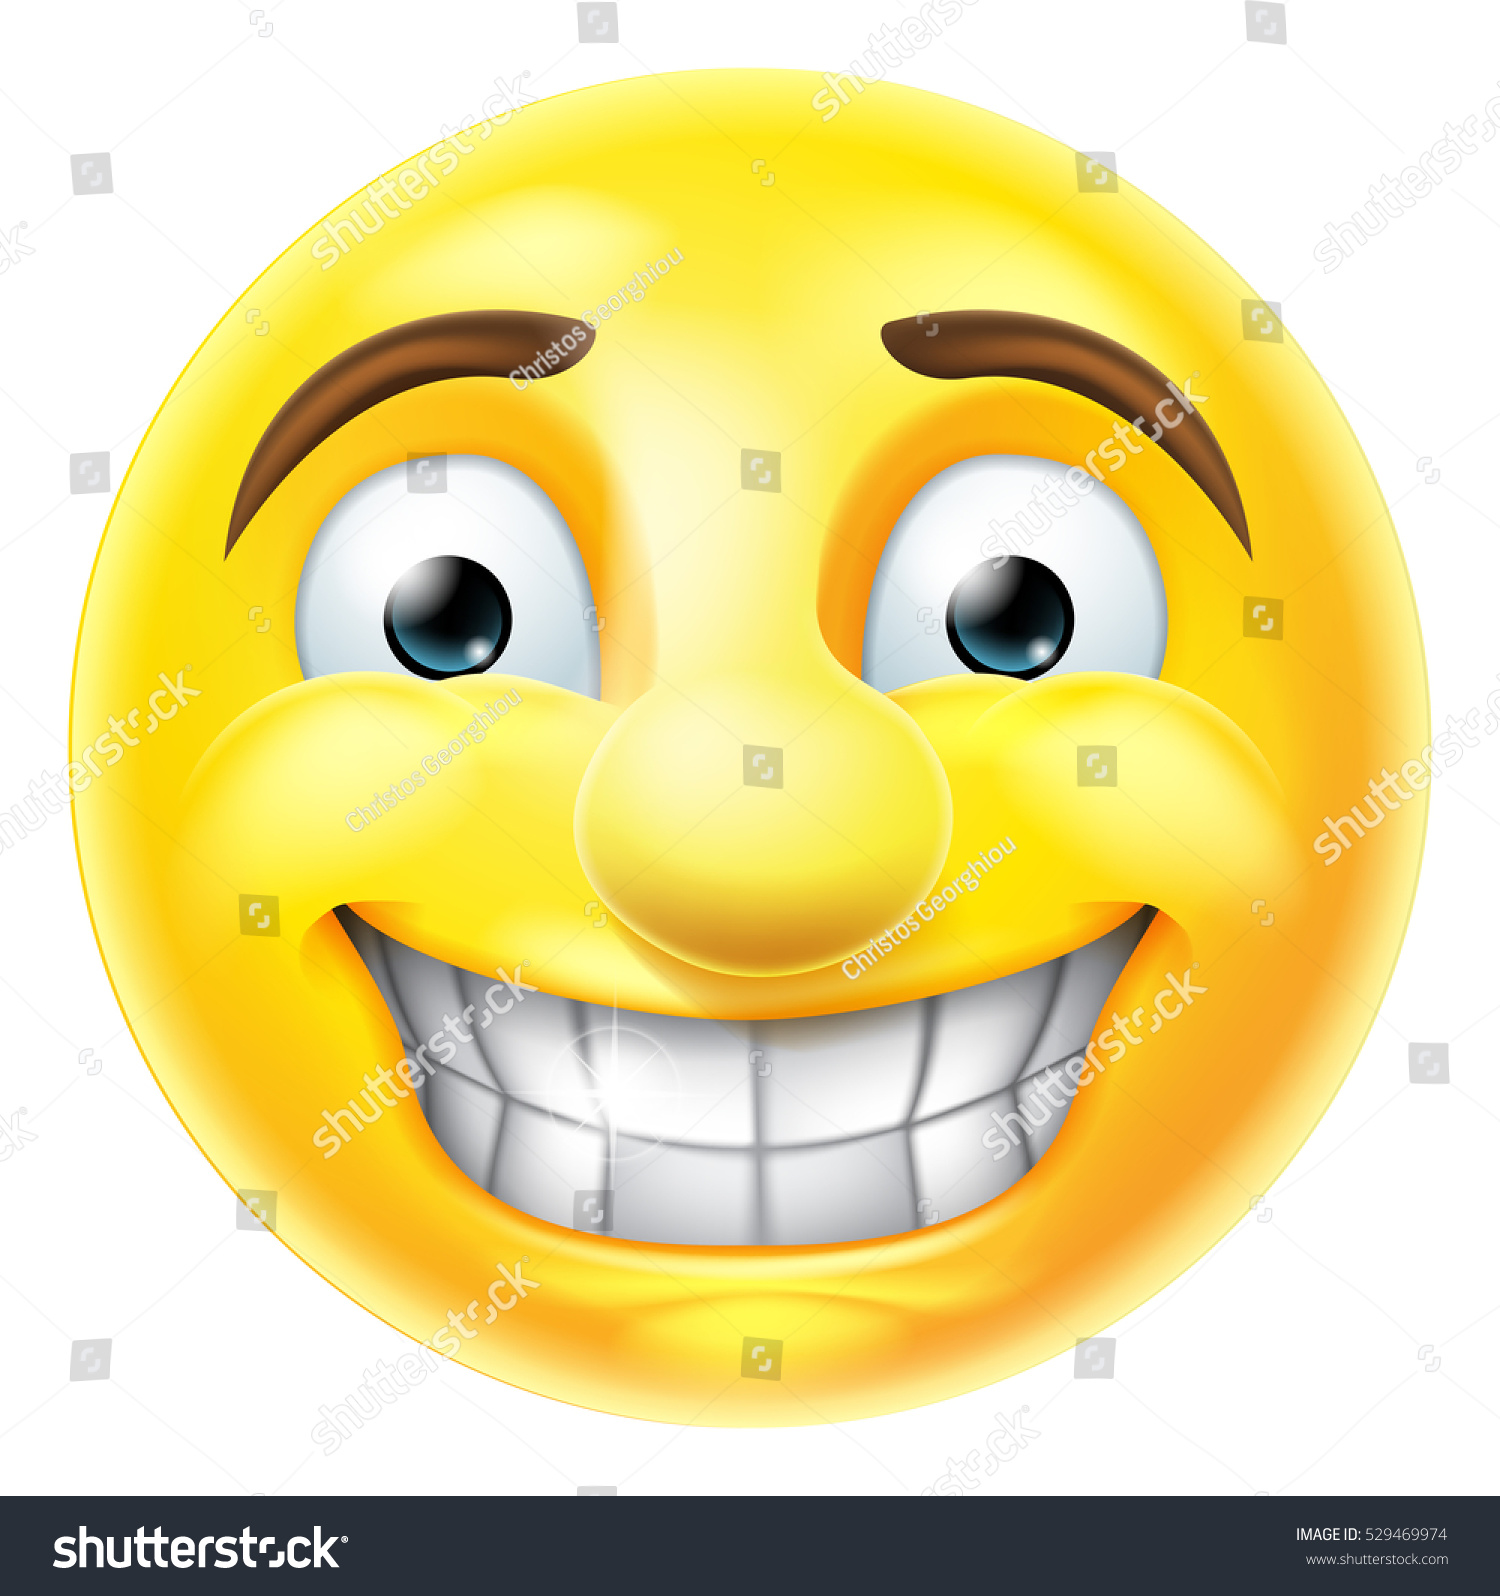 Cartoon Emoji Emoticon Smiling Smiley Face Character Stock Vector ...